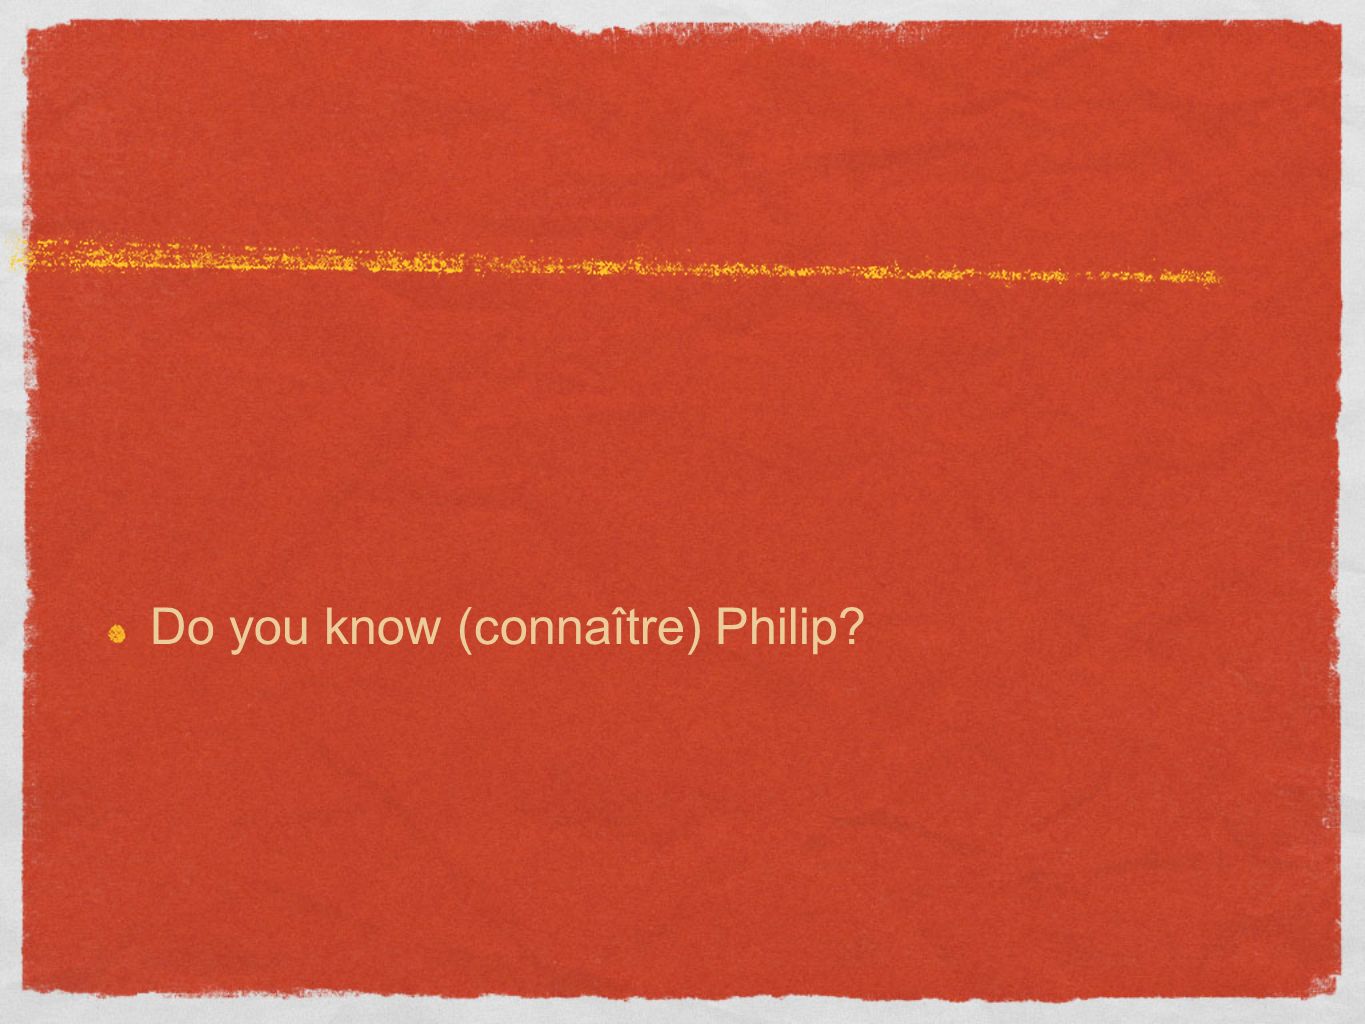 Do you know (connaître) Philip